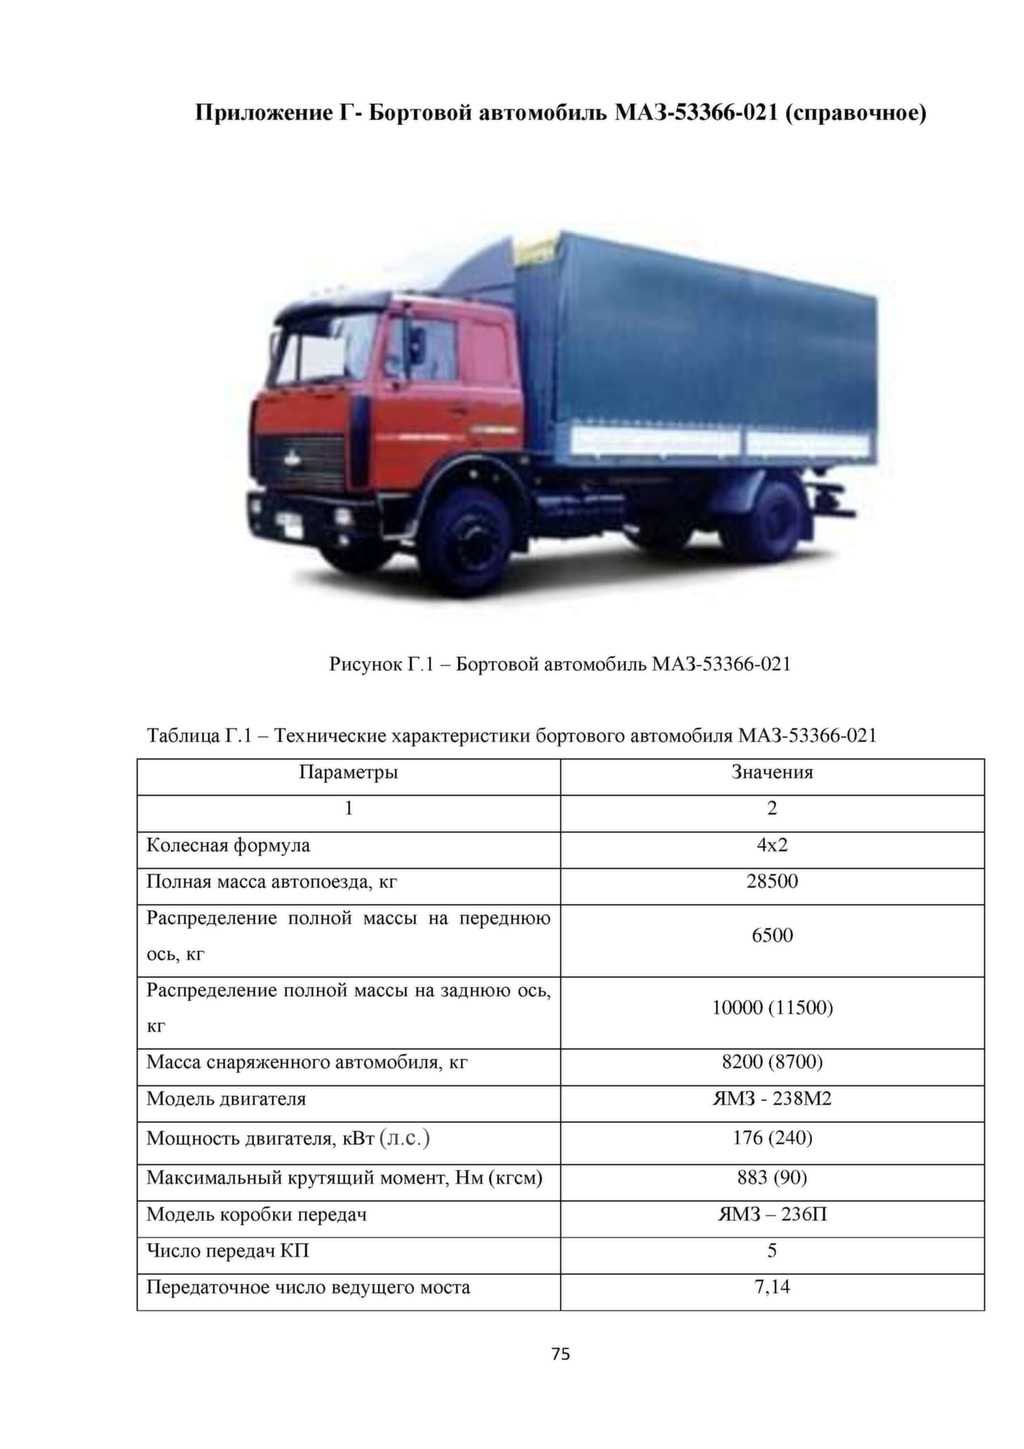 Характеристики бортового автомобиля МАЗ-5336 и ТОП-4 его модификаций